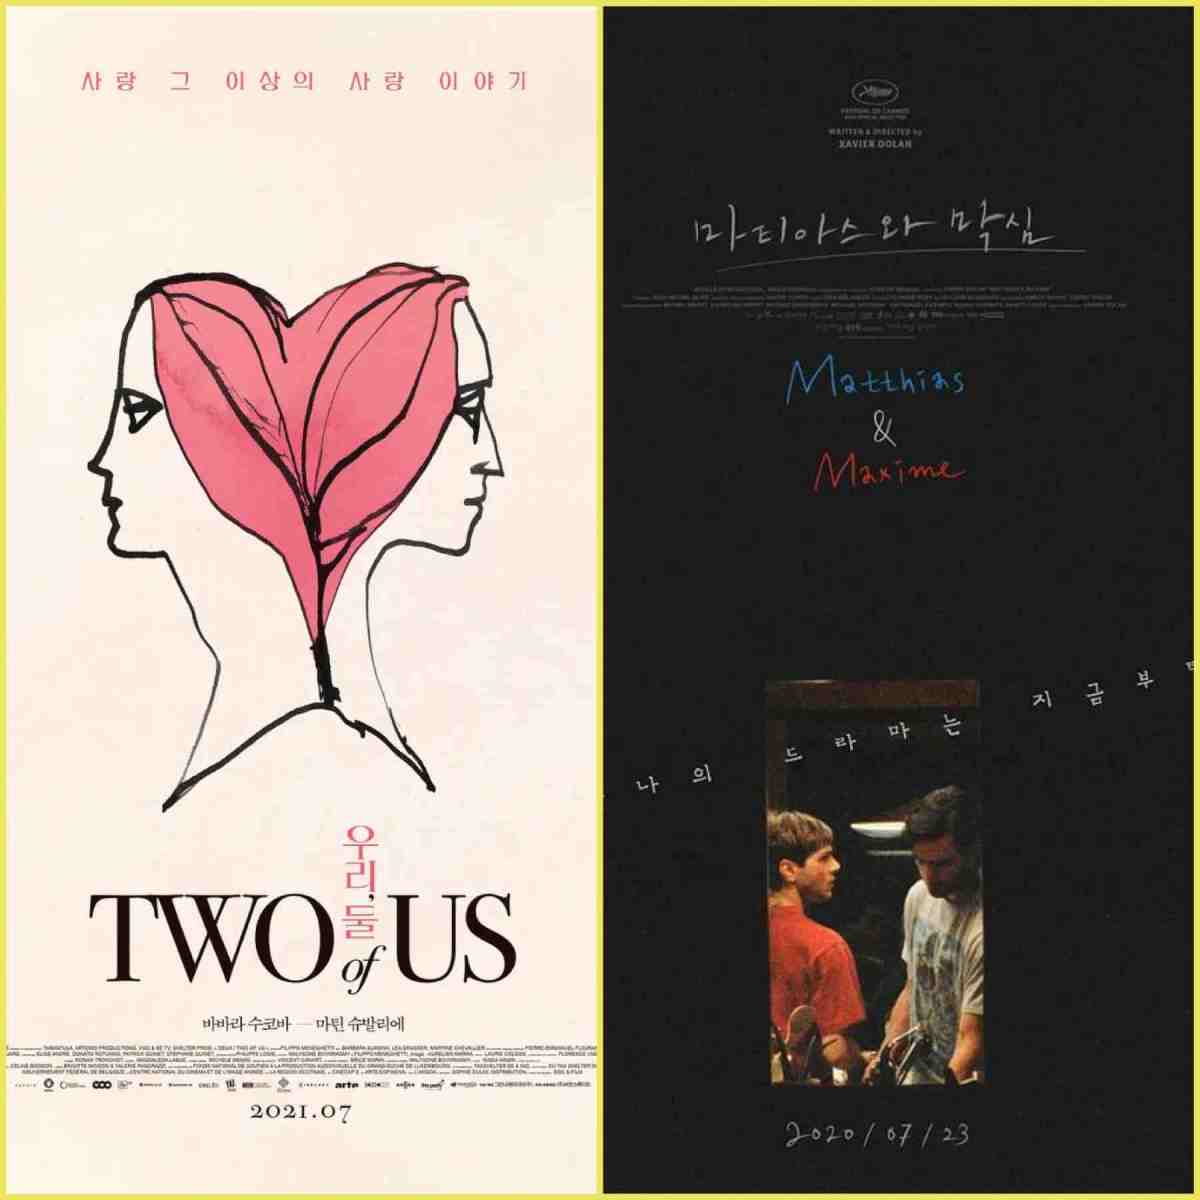 Two of Us (2019) - IMDb